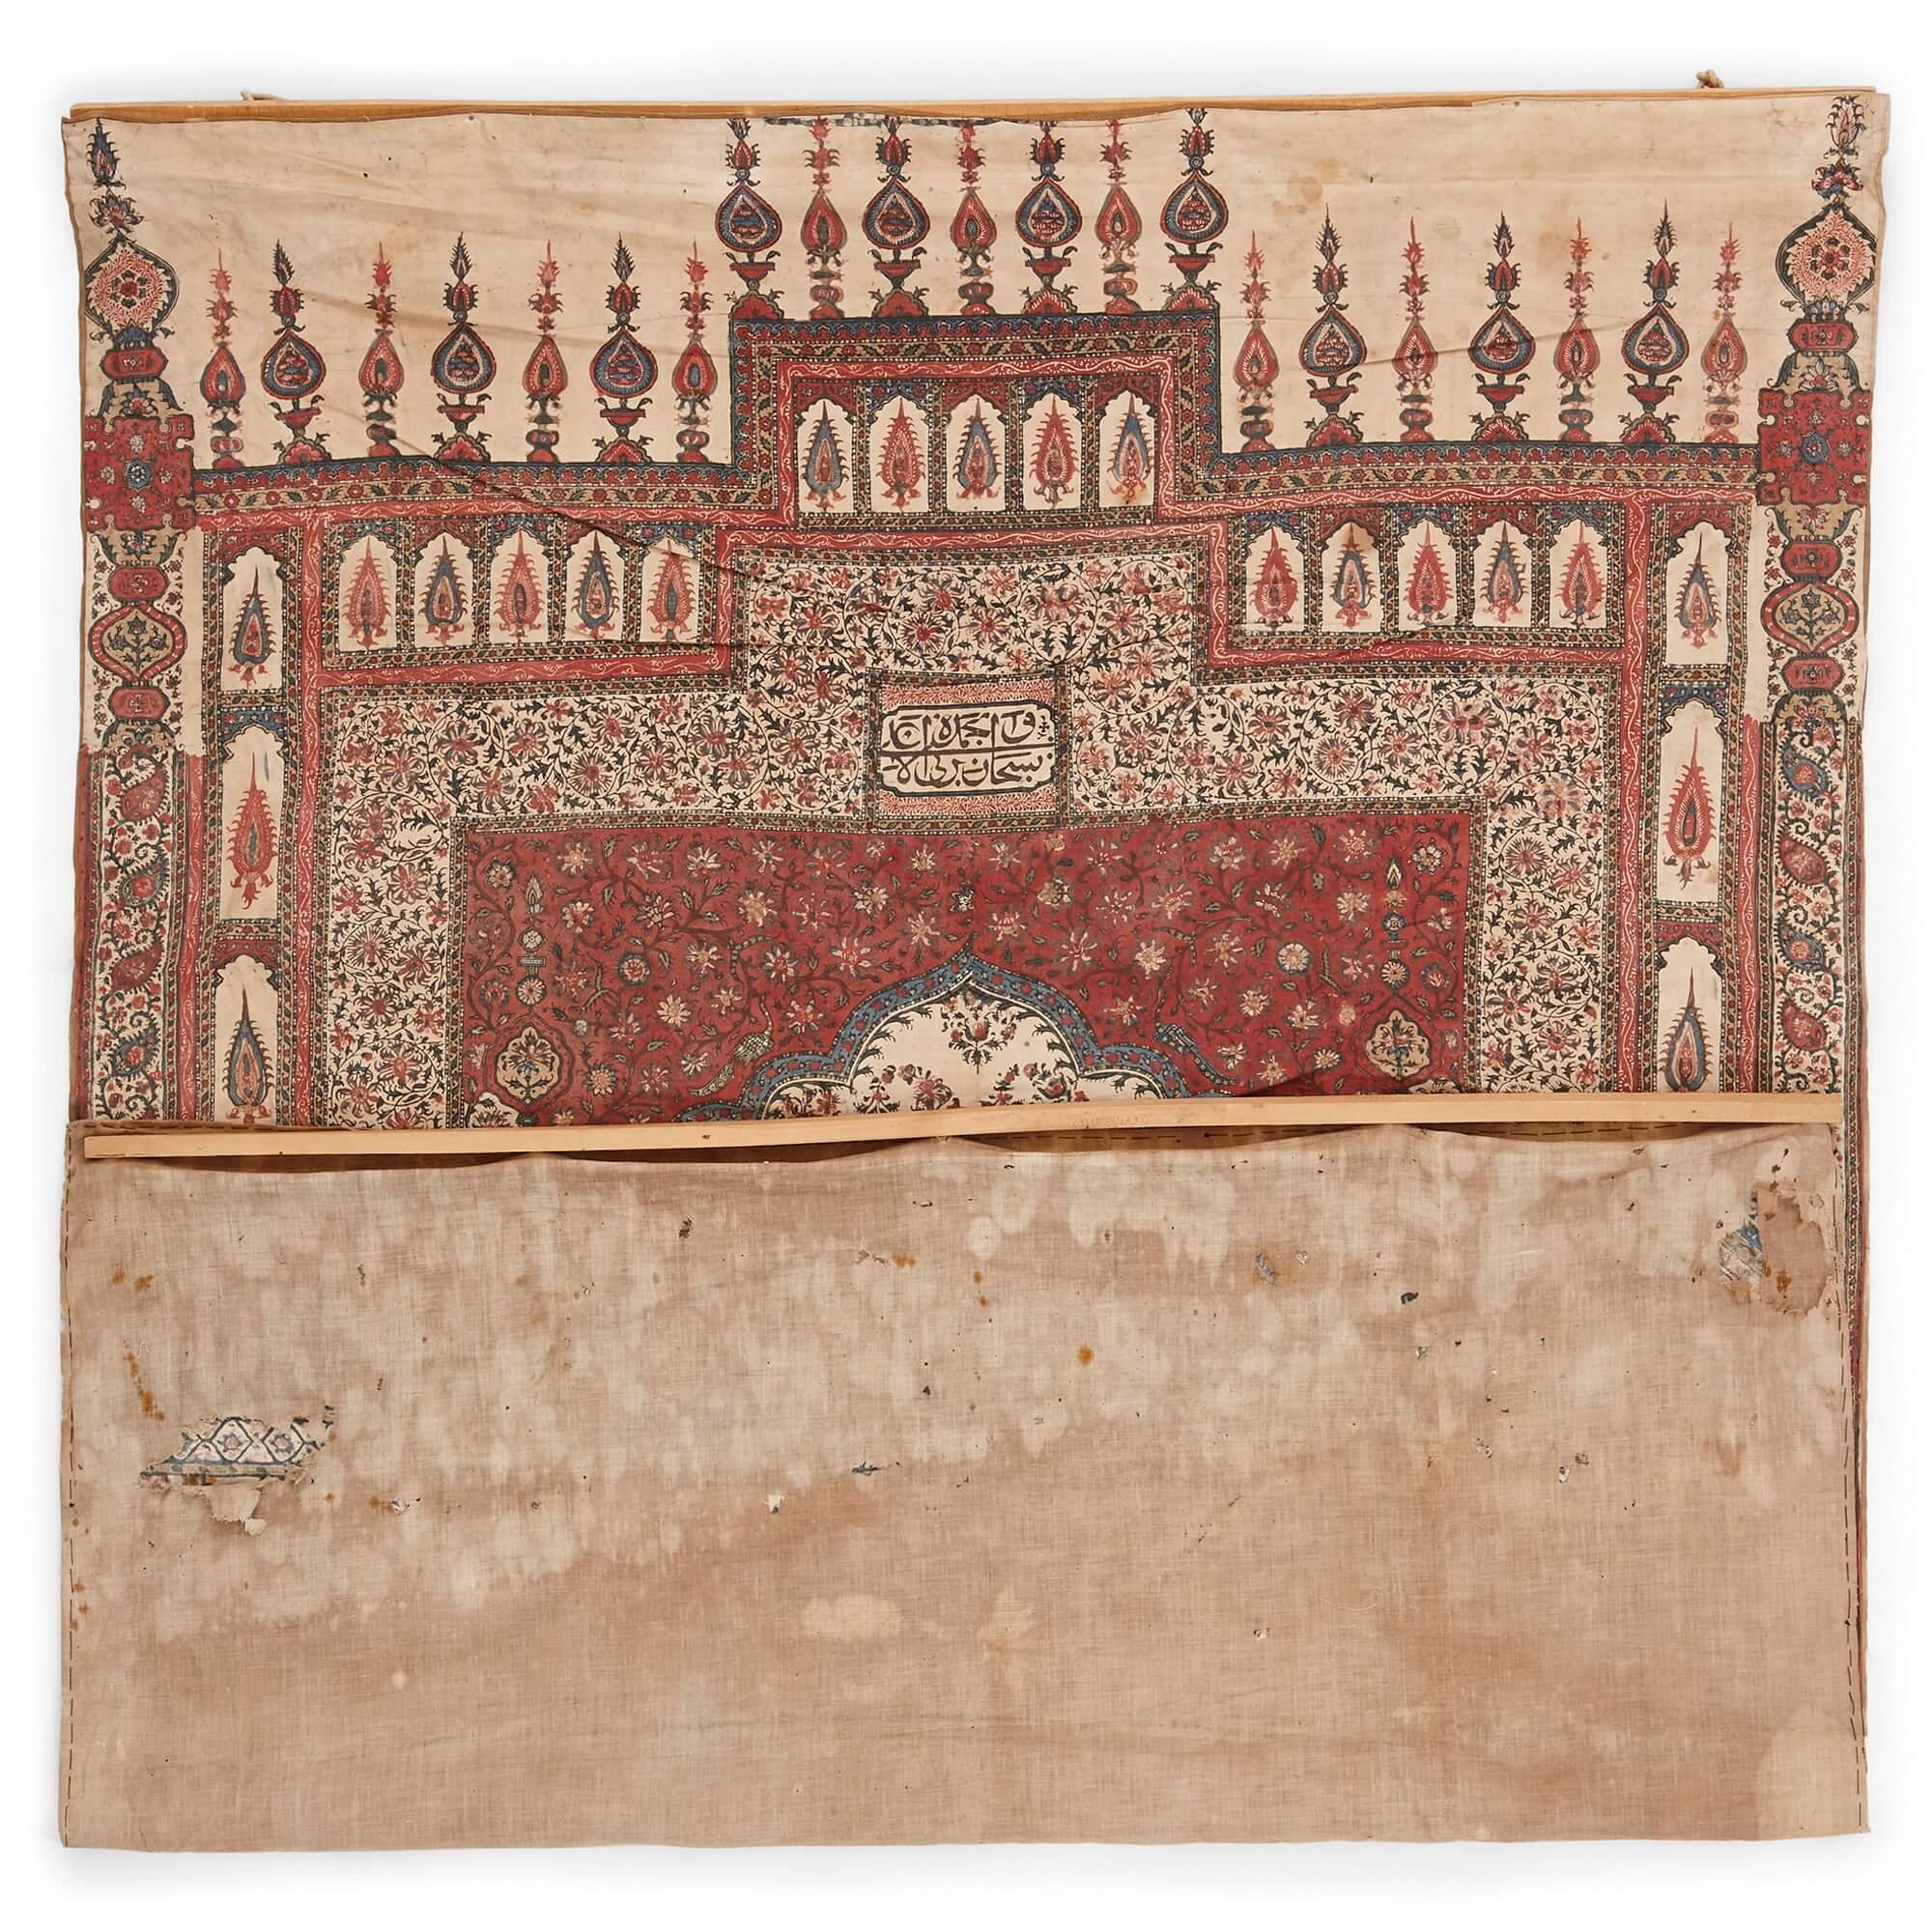 Antiker iranischer Kalamkari Gebetsteppich
Persisch, Ende 19. Jahrhundert 
Höhe 128cm, Breite 92cm

Dieser Gebetsteppich aus Baumwolle, der im späten 19. Jahrhundert von geschickten iranischen Handwerkern hergestellt wurde, zeigt eine Fülle von